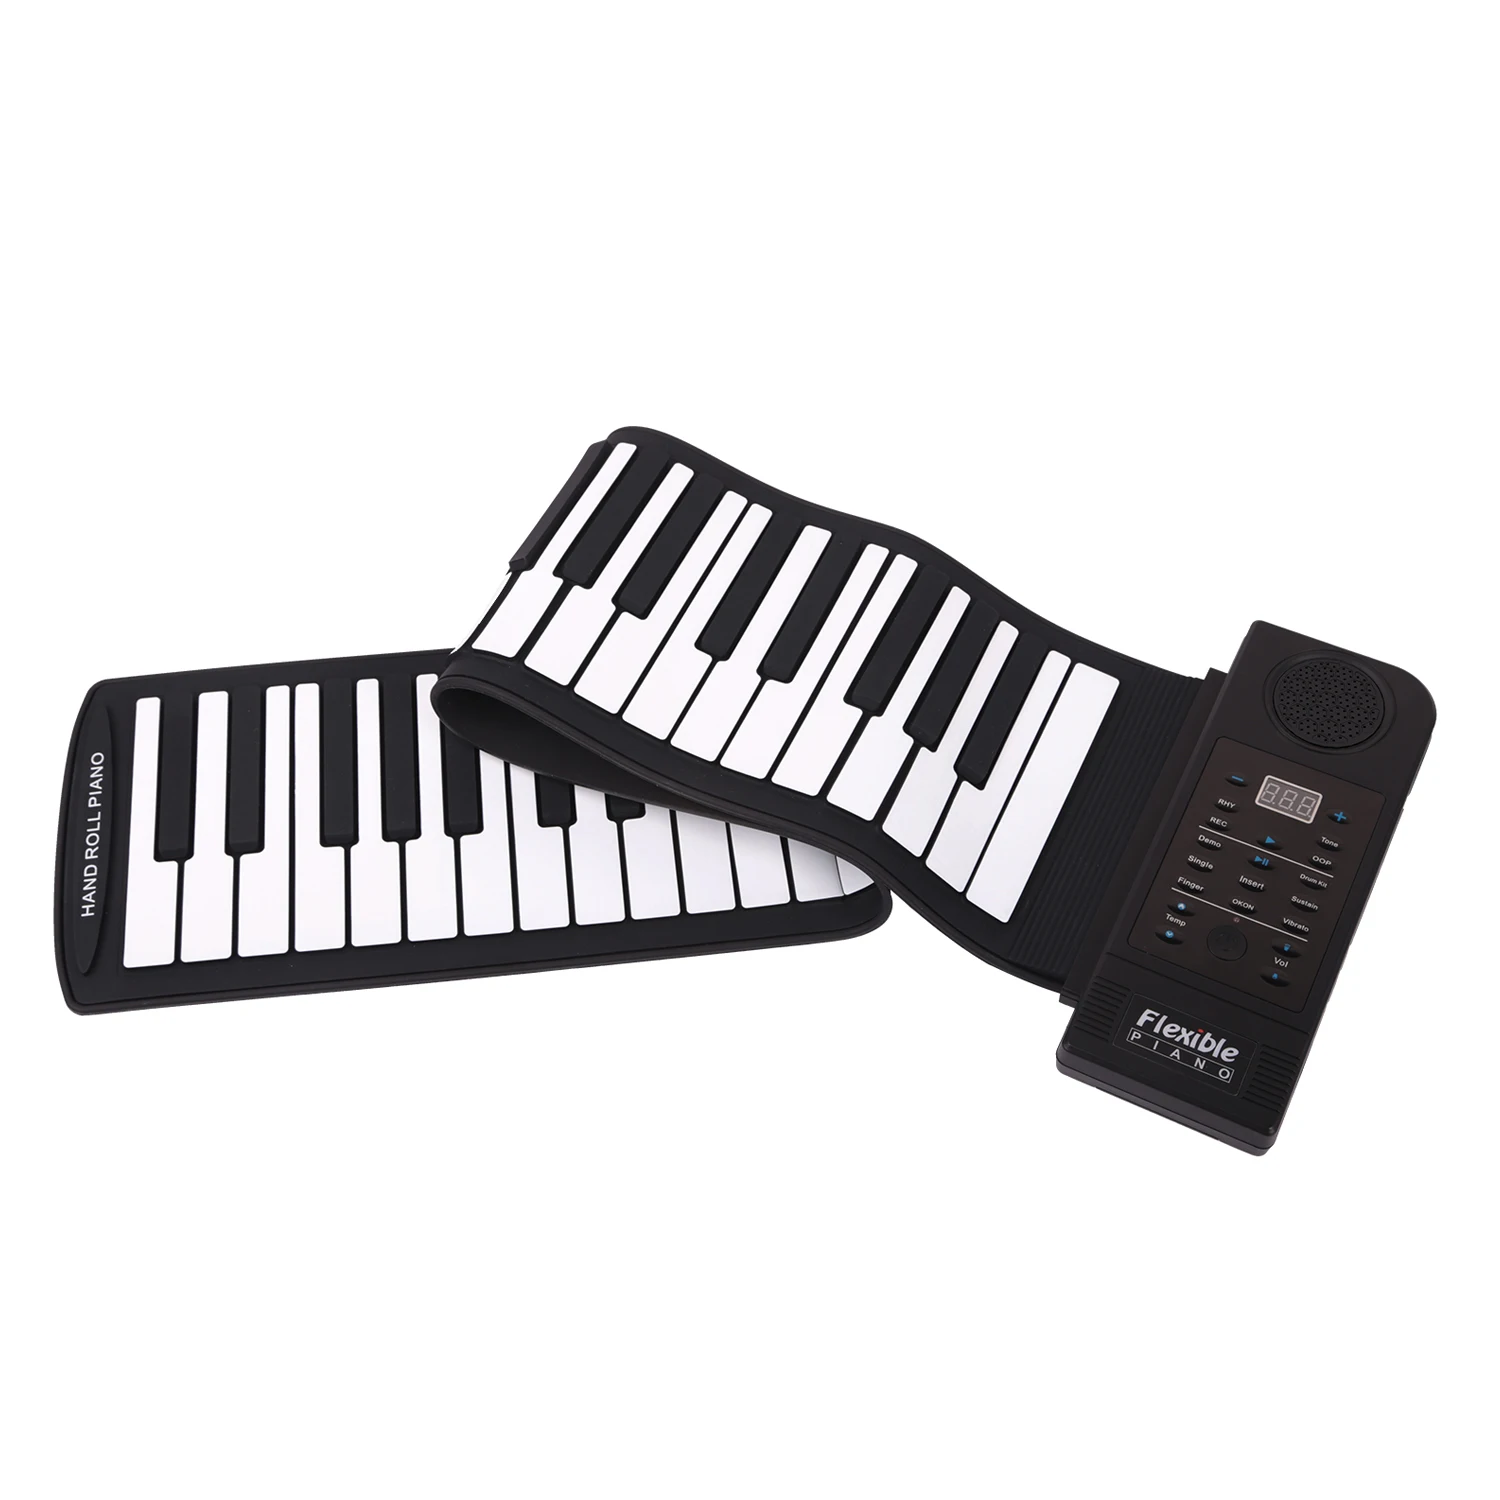 SEWS-Гибкое пианино 61 клавиша электропианино клавиатура кремниевое рулонное пианино функция поддержки USB порт с громким динамиком(US plu